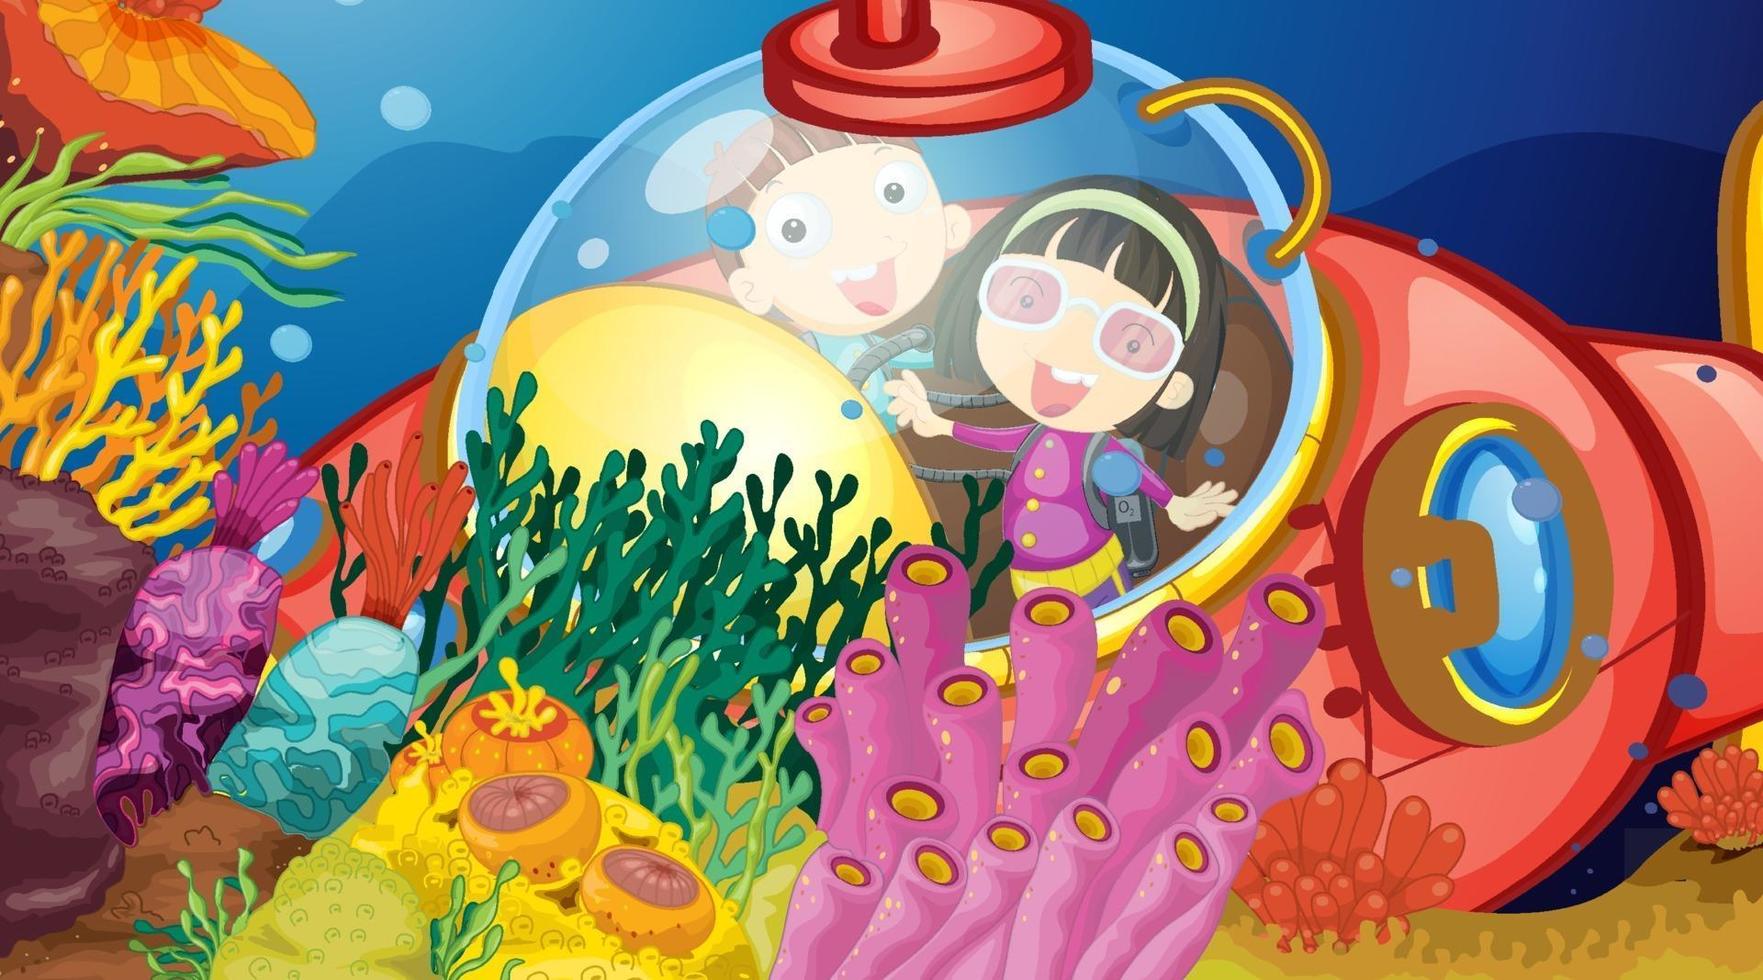 cena subaquática com crianças felizes em um submarino explorando o submarino vetor